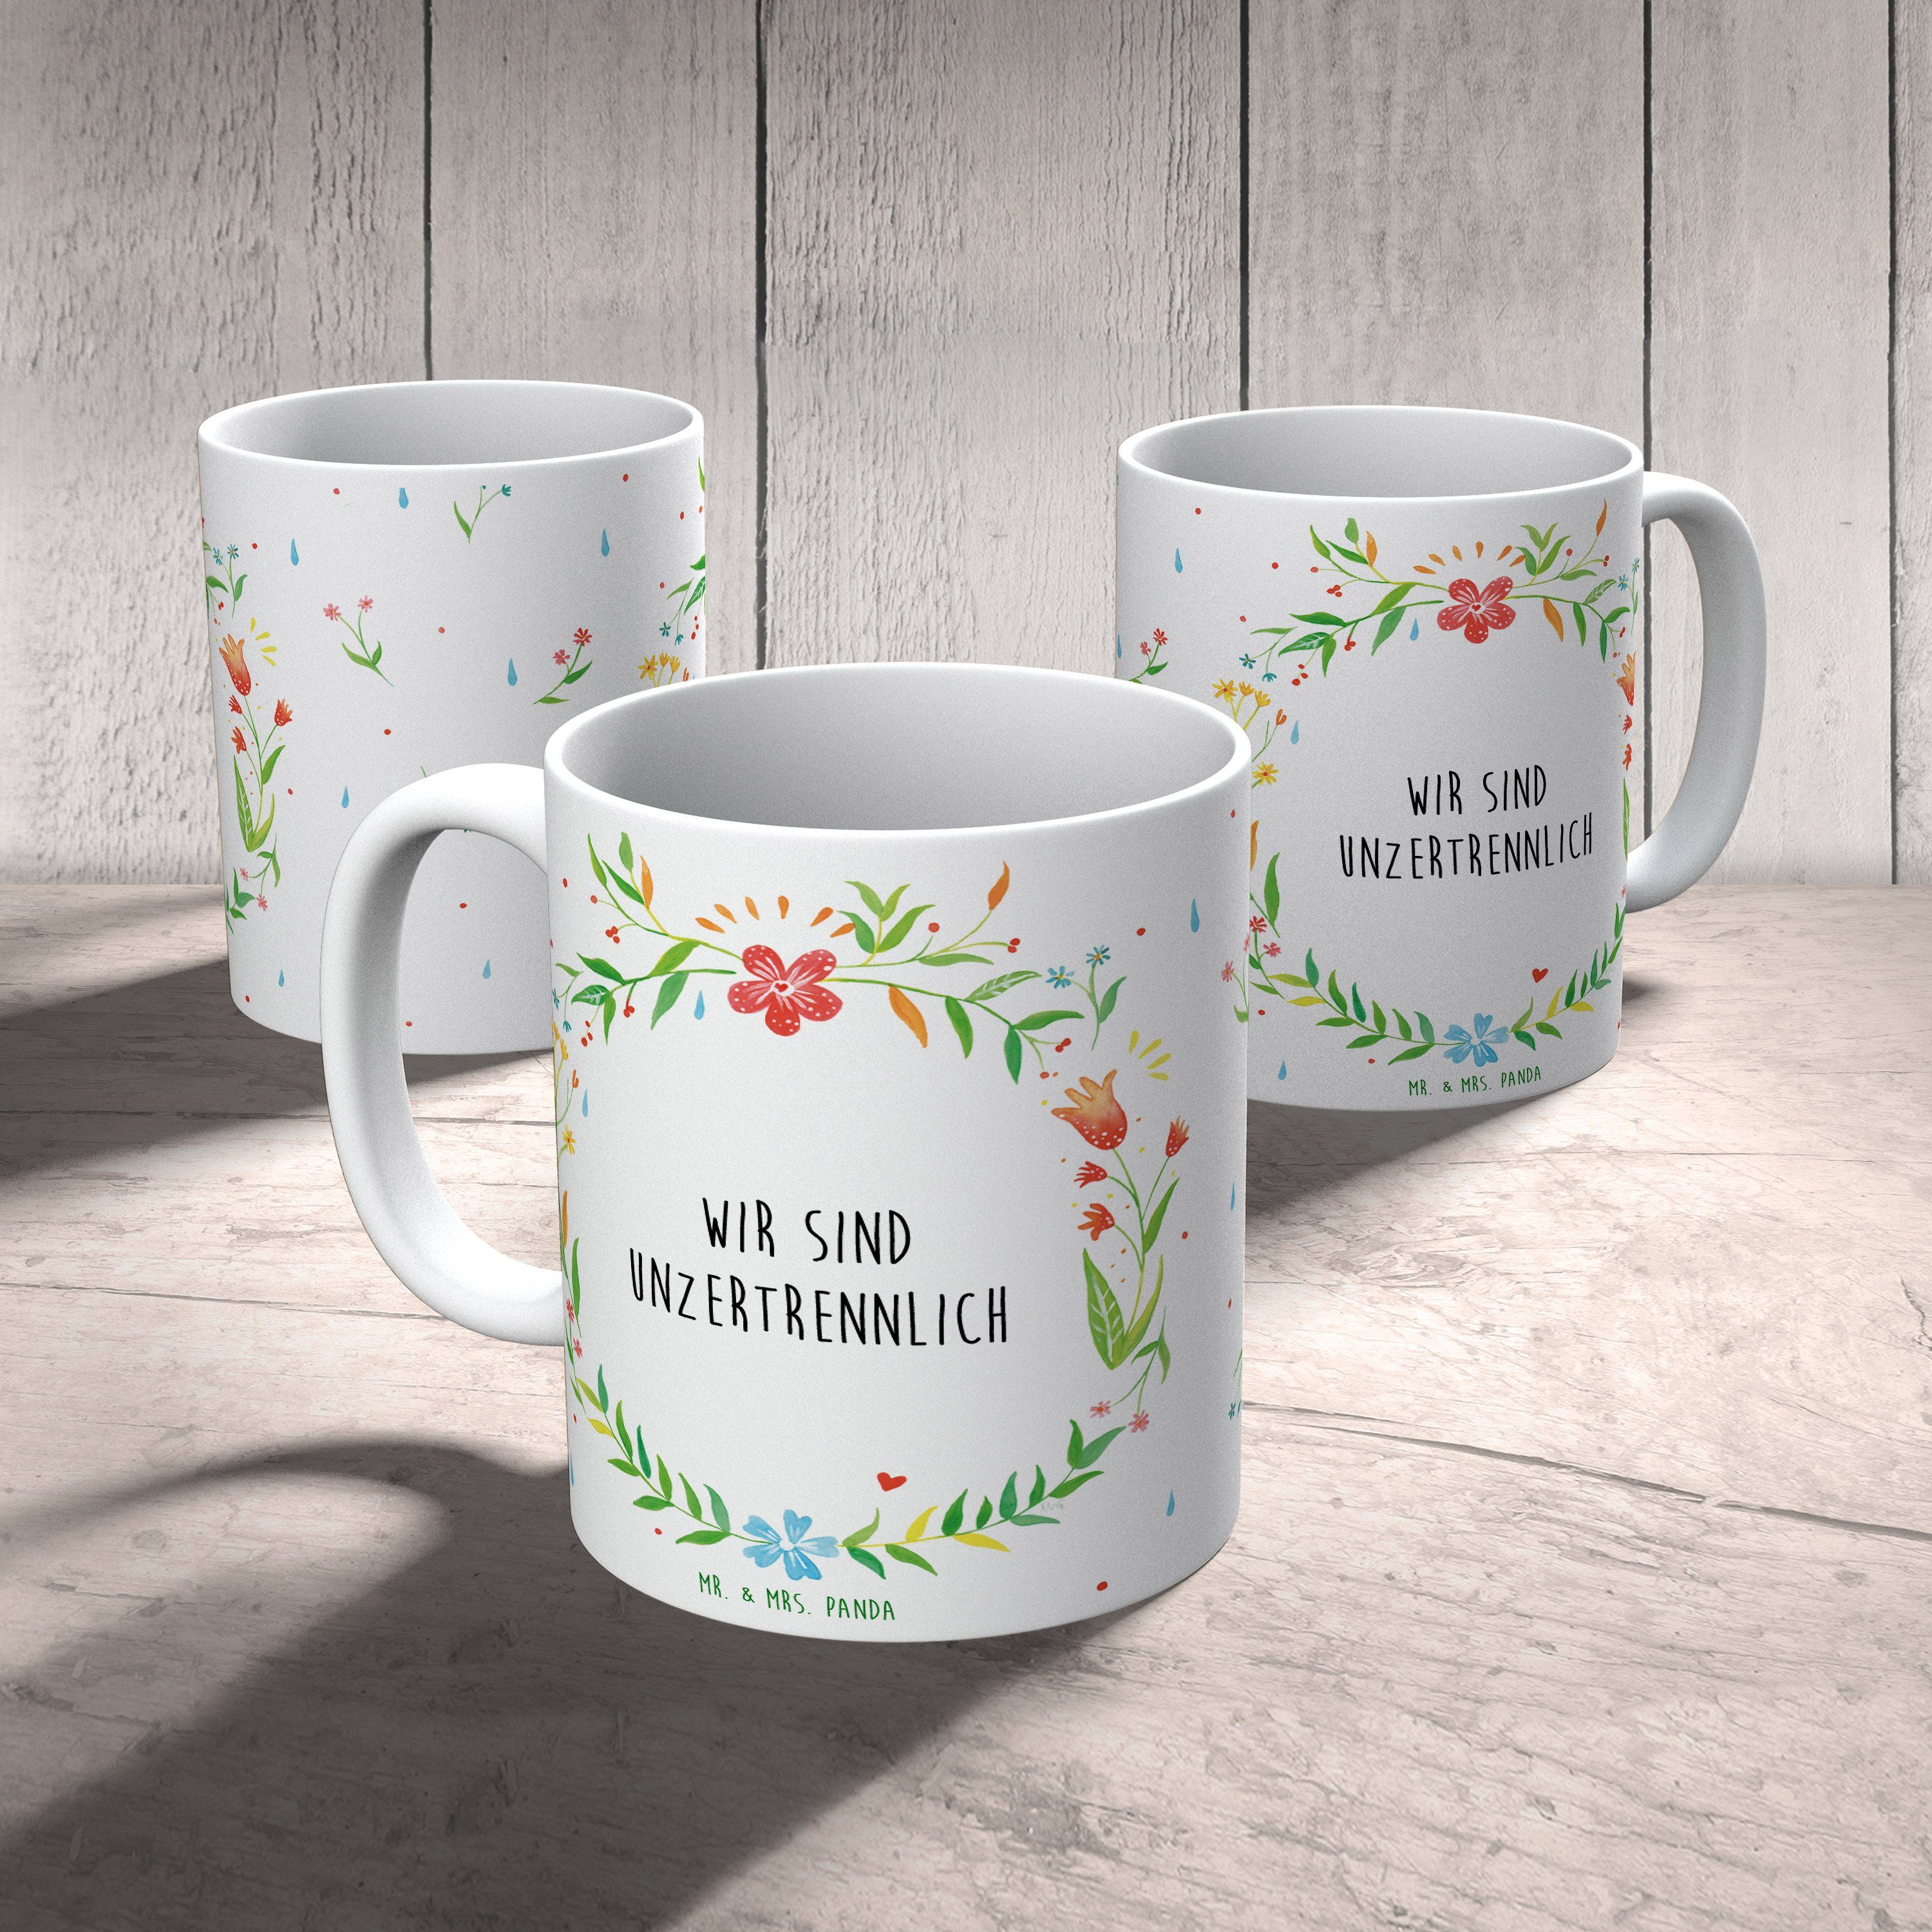 Mr. & Mrs. Panda Tasse Tasse Teetasse, Geschenk, sind T, Motive, Keramik - unzertrennlich Becher, Wir